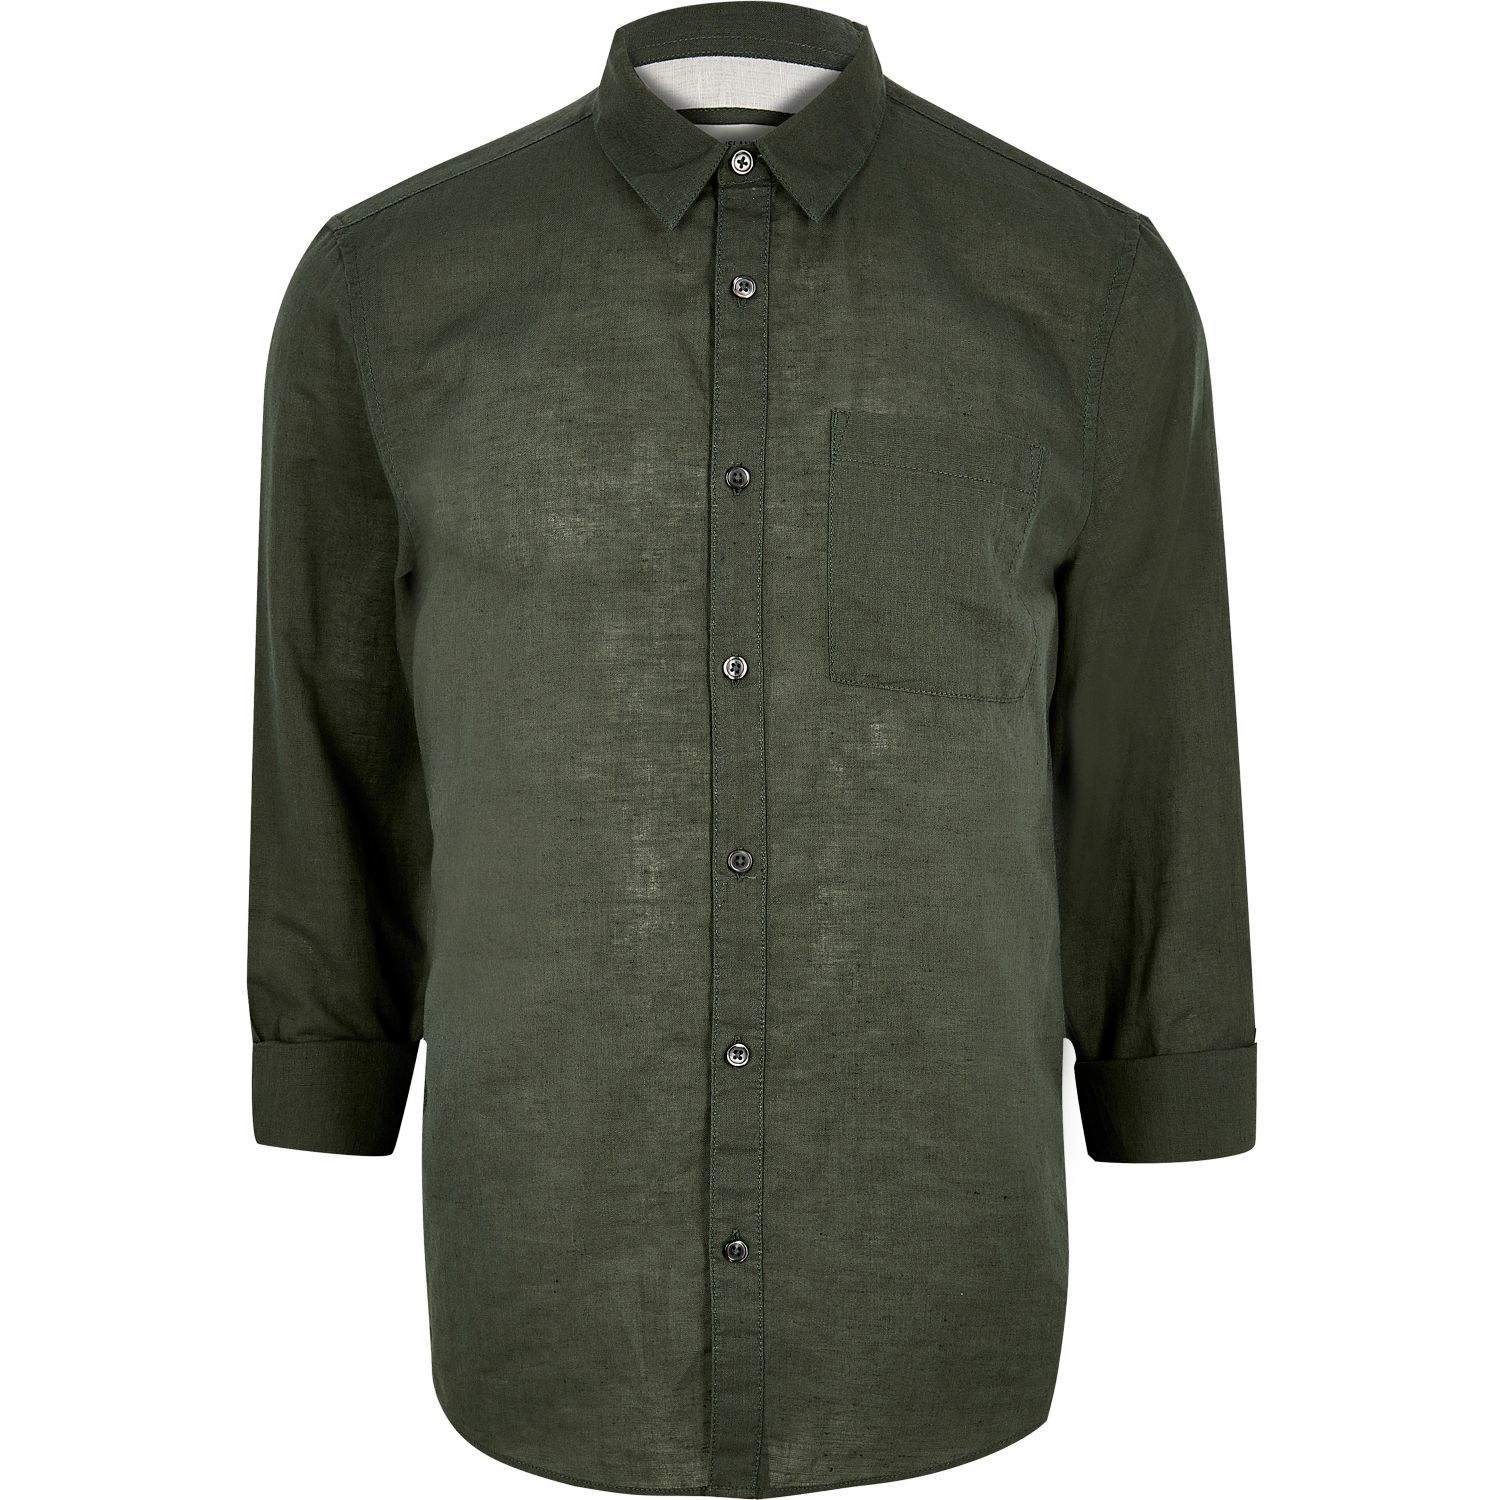 Lyst - River Island Dark Green Linen-rich Shirt in Green for Men